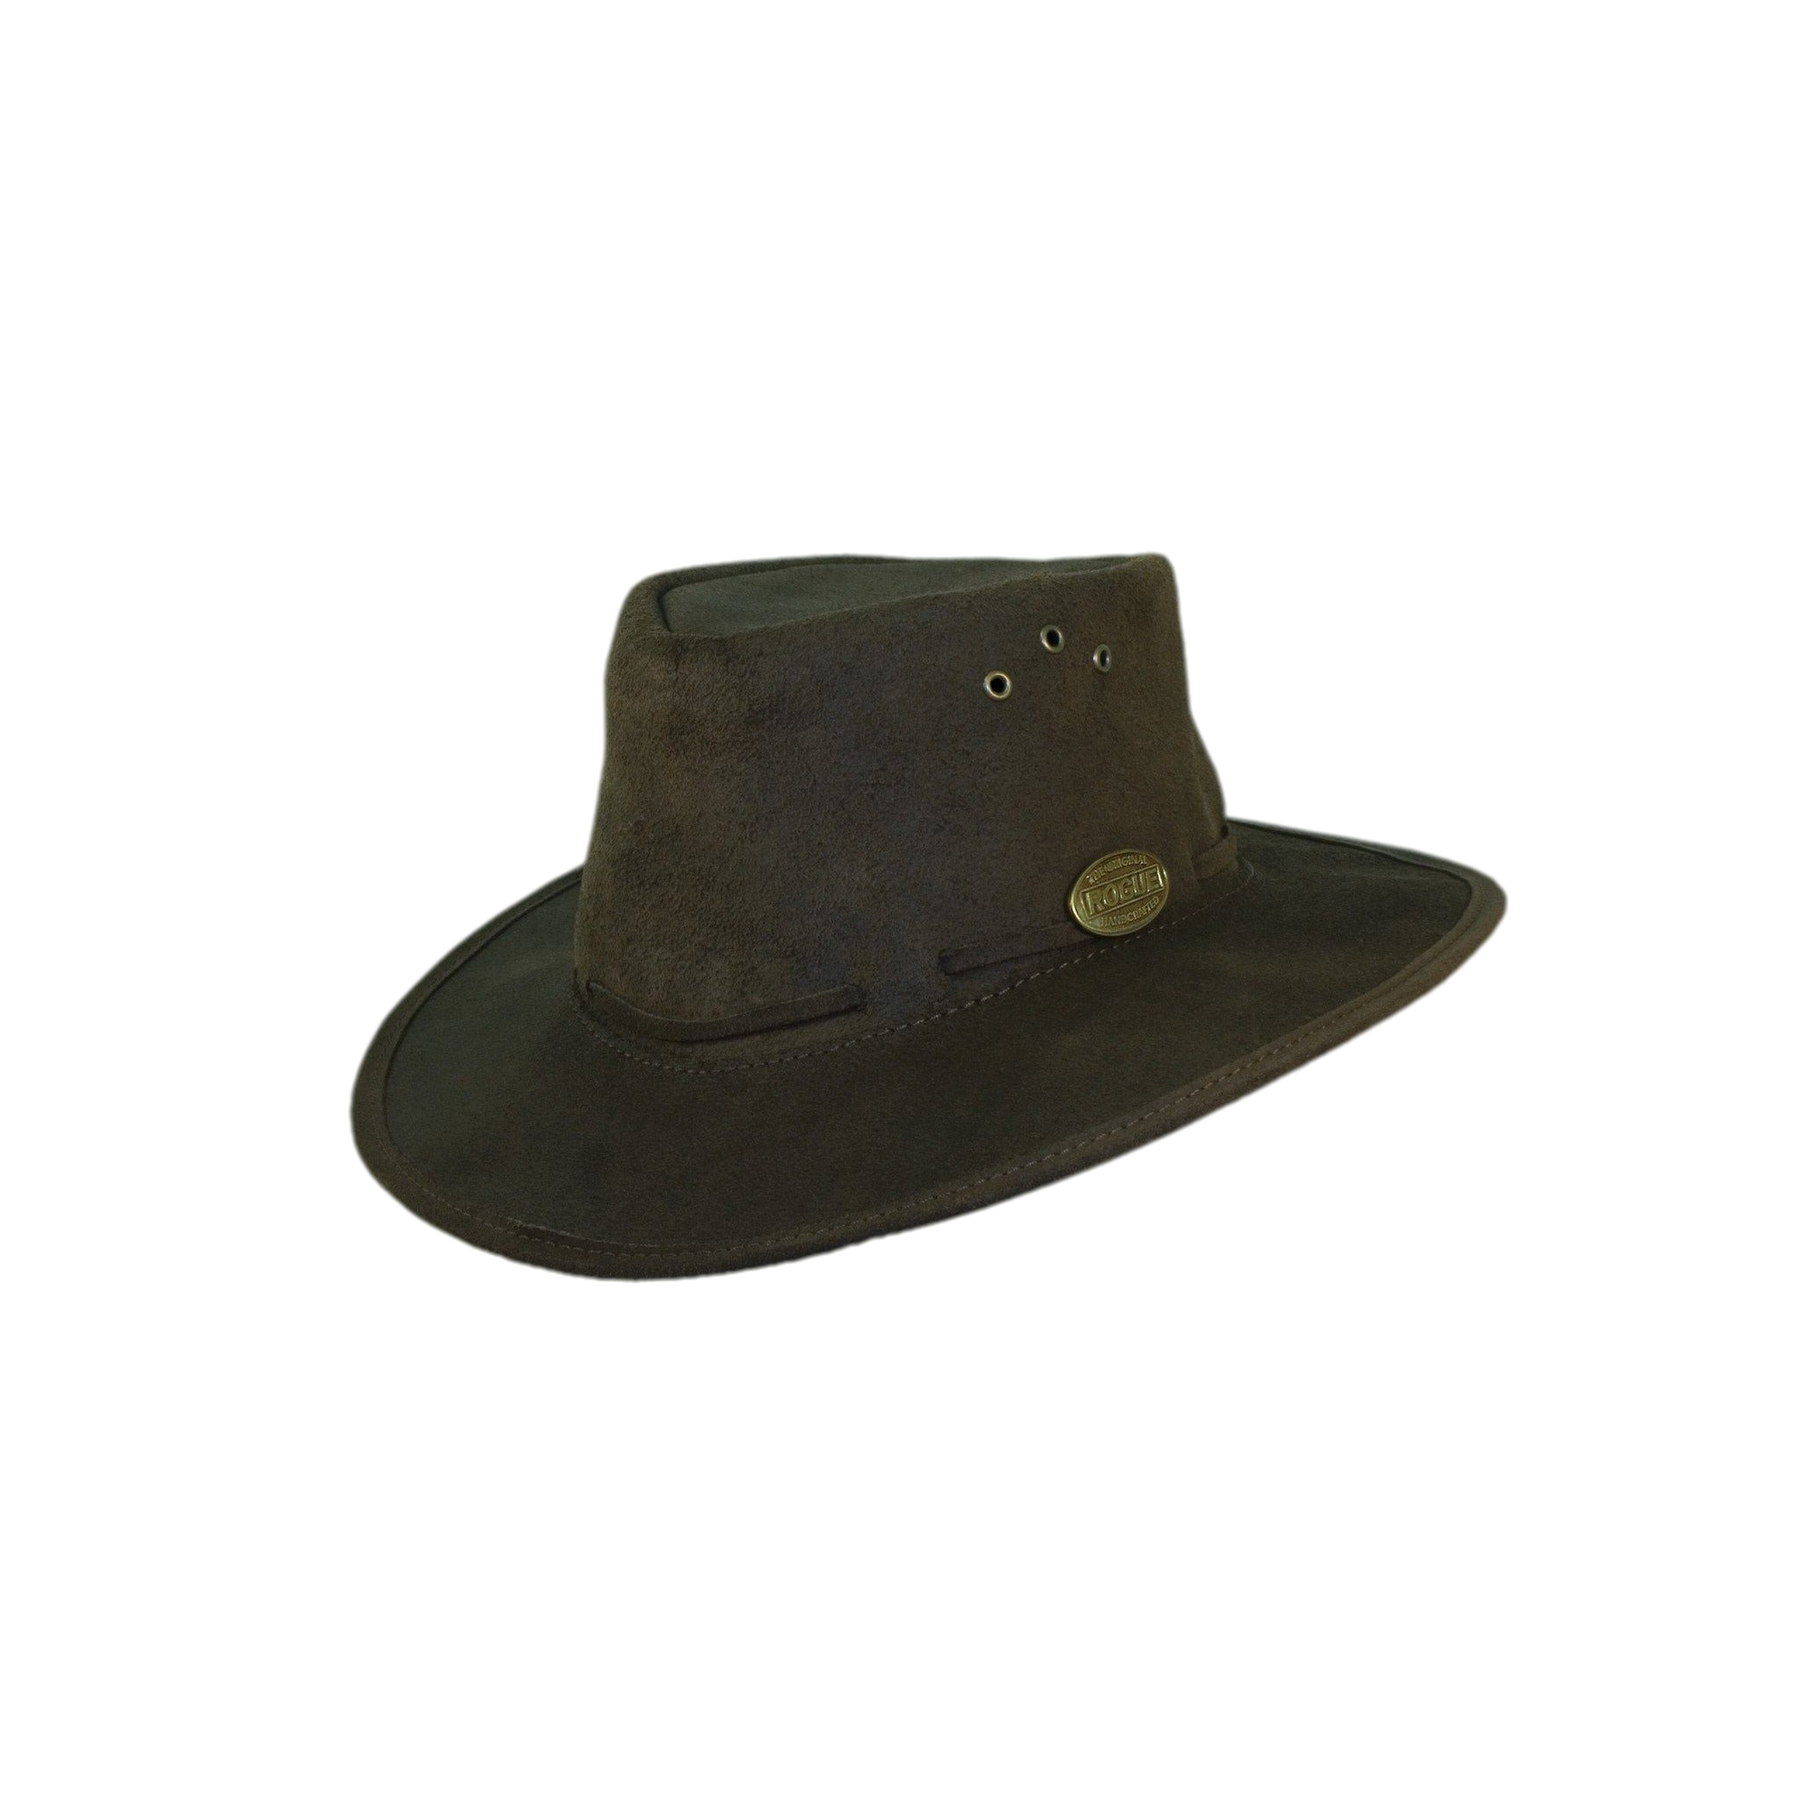 Rogue Oiled Suede Packaway Safari / Cowboy Hat 171C-Equestrian Co.